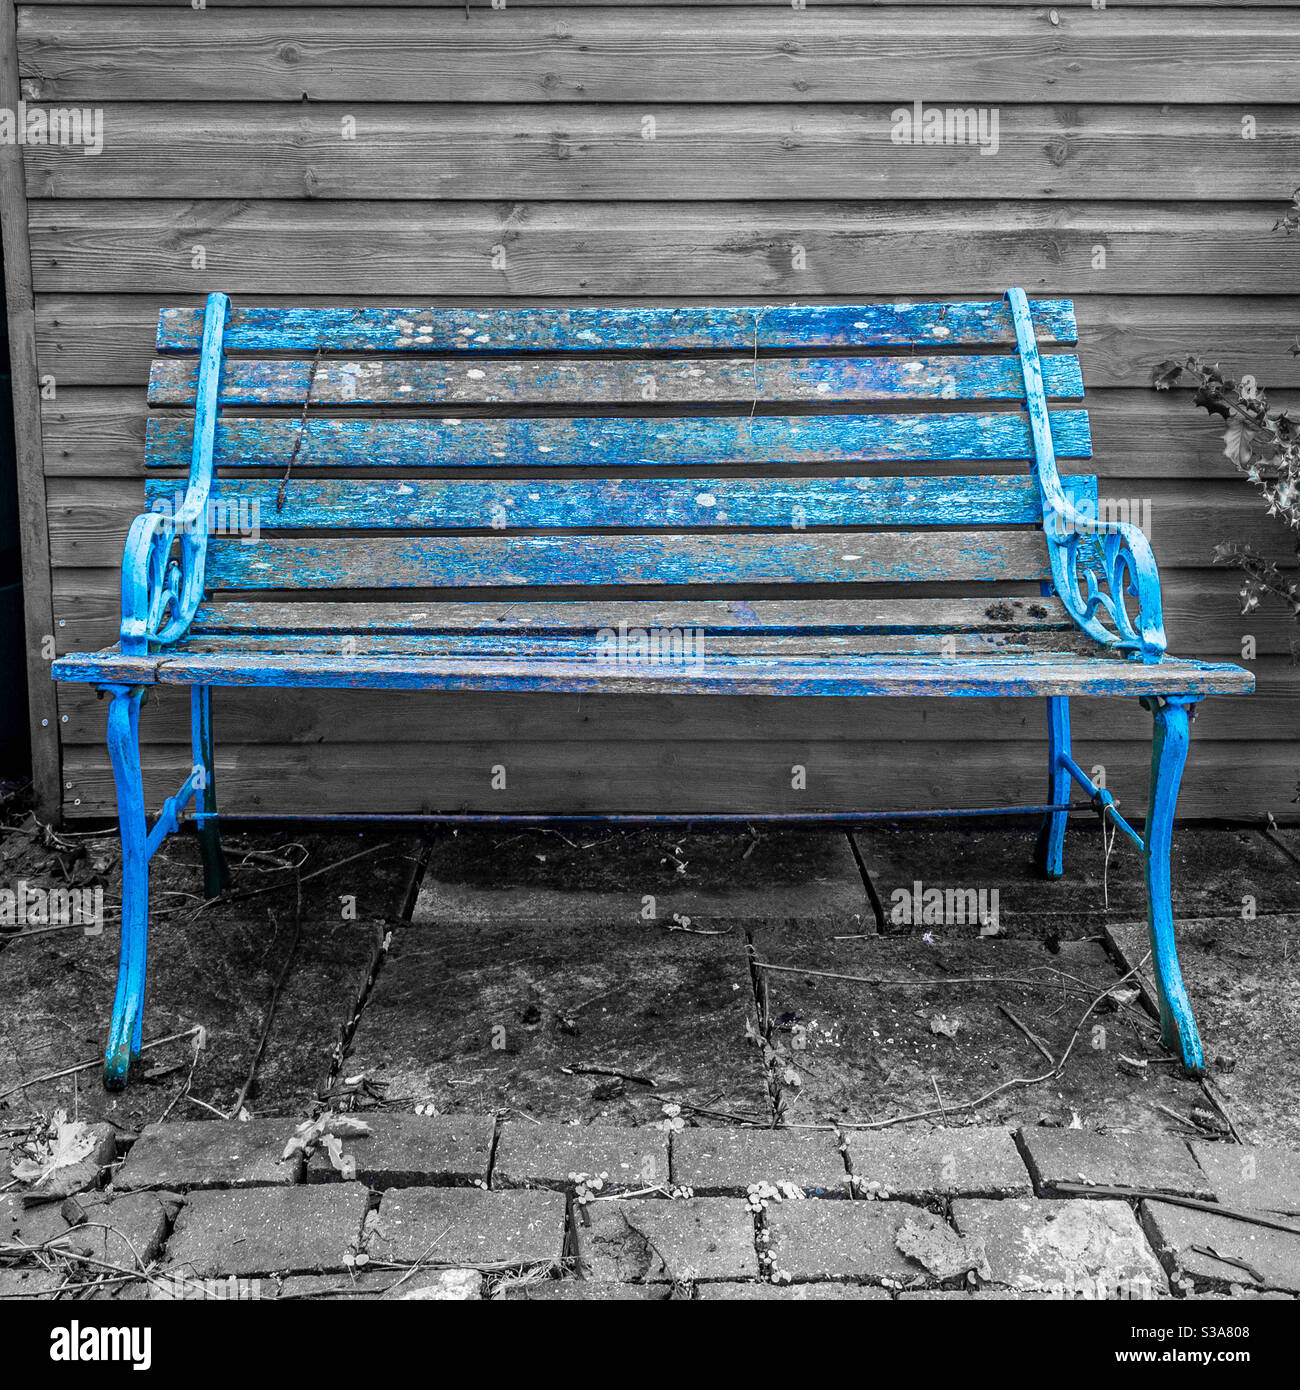 Alte Holz und Gusseisen Gartenbank mit Flocking blau Neben Schuppen malen  Stockfotografie - Alamy